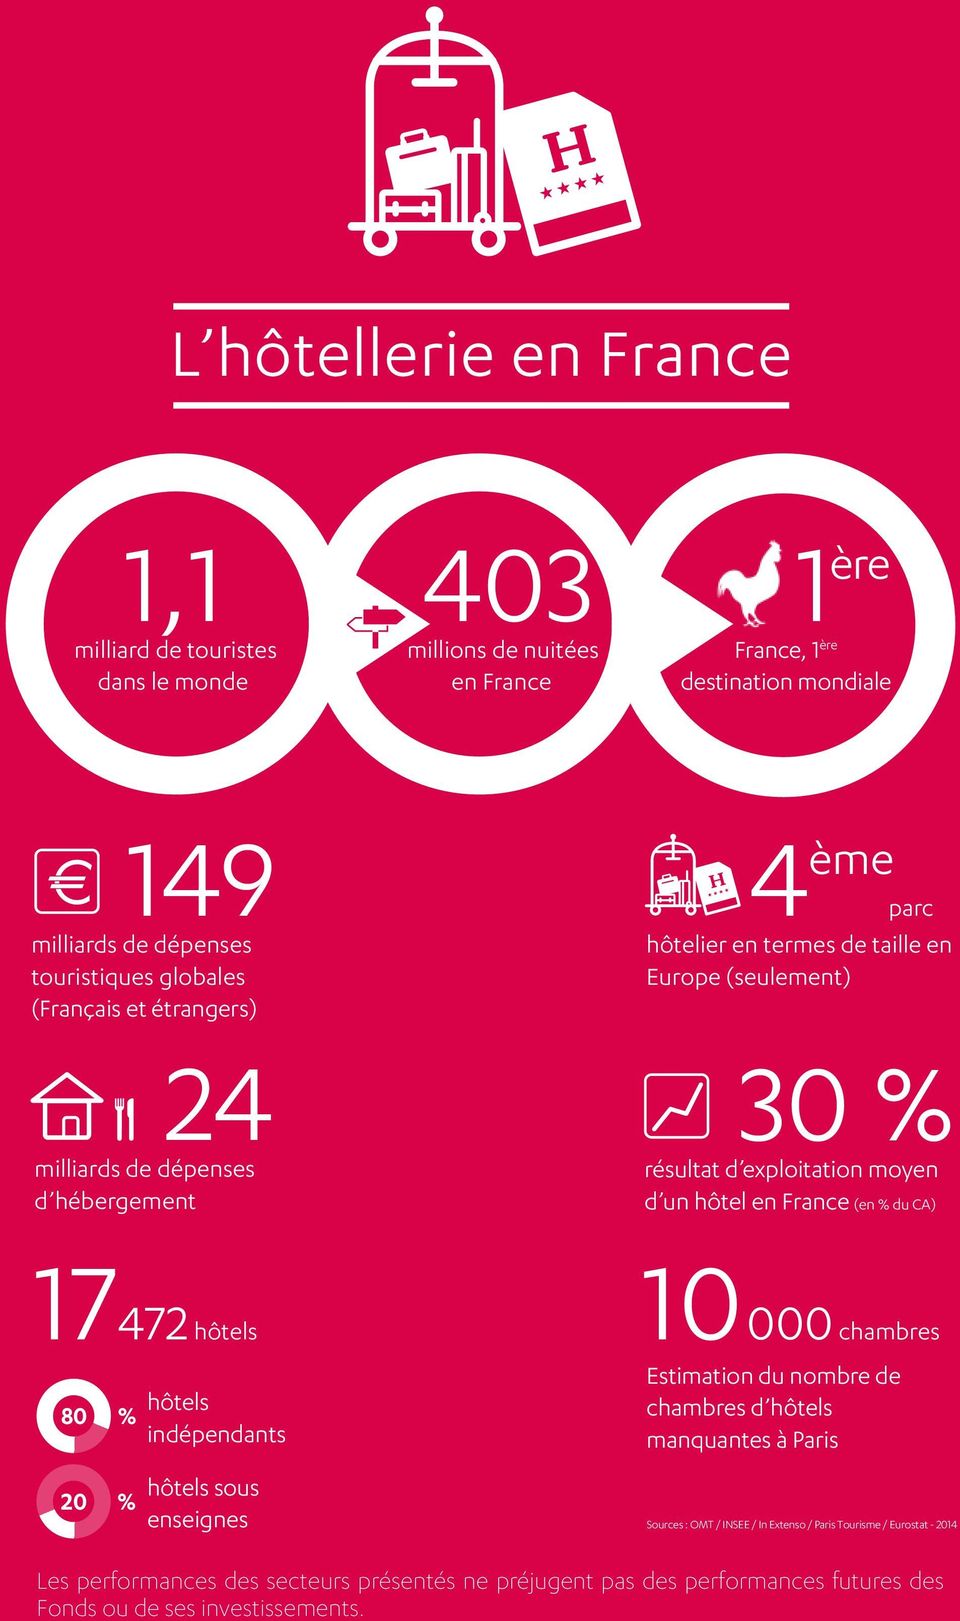 hôtel en France (en % du CA) 17472 hôtels 000 chambres 80 % 20 % hôtels indépendants hôtels sous enseignes 10 Estimation du nombre de chambres d hôtels manquantes à Paris